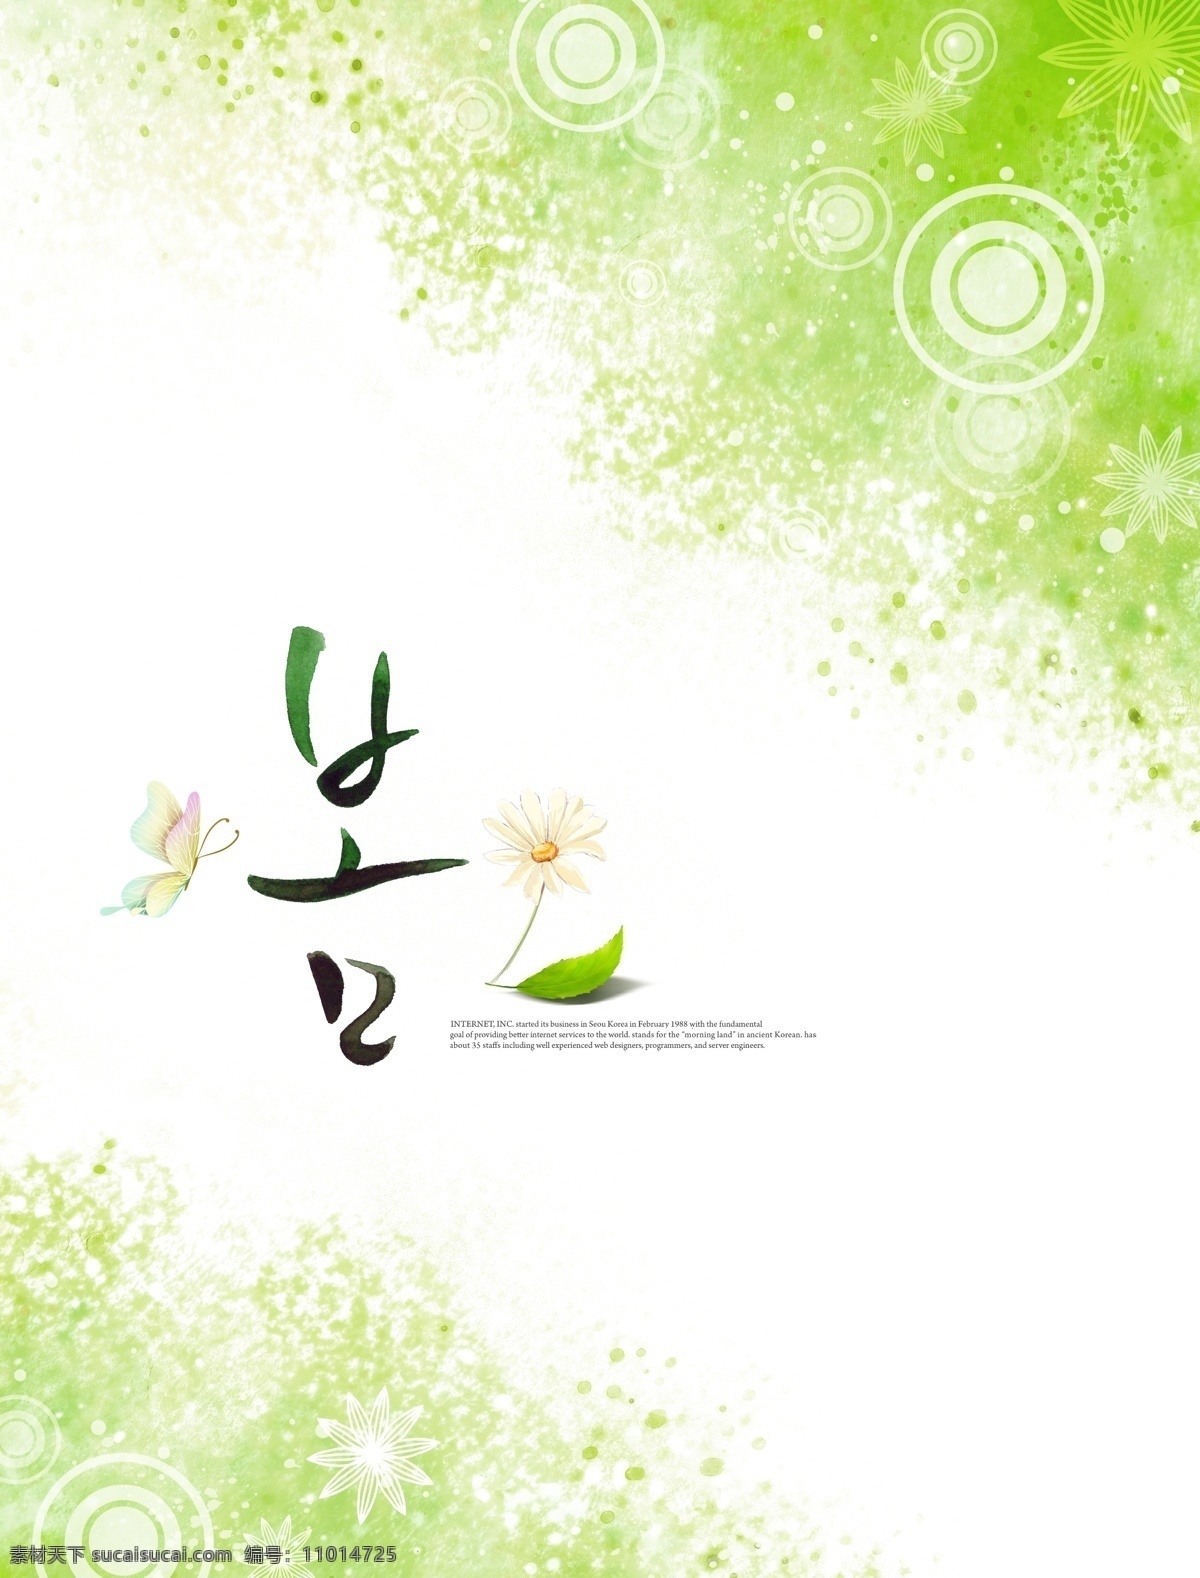 绿色 水彩画 背景 绿叶 分层 韩国素材 tua 唯美 插画 水彩 花朵 花卉 圆圈 圆形 蝴蝶 白色